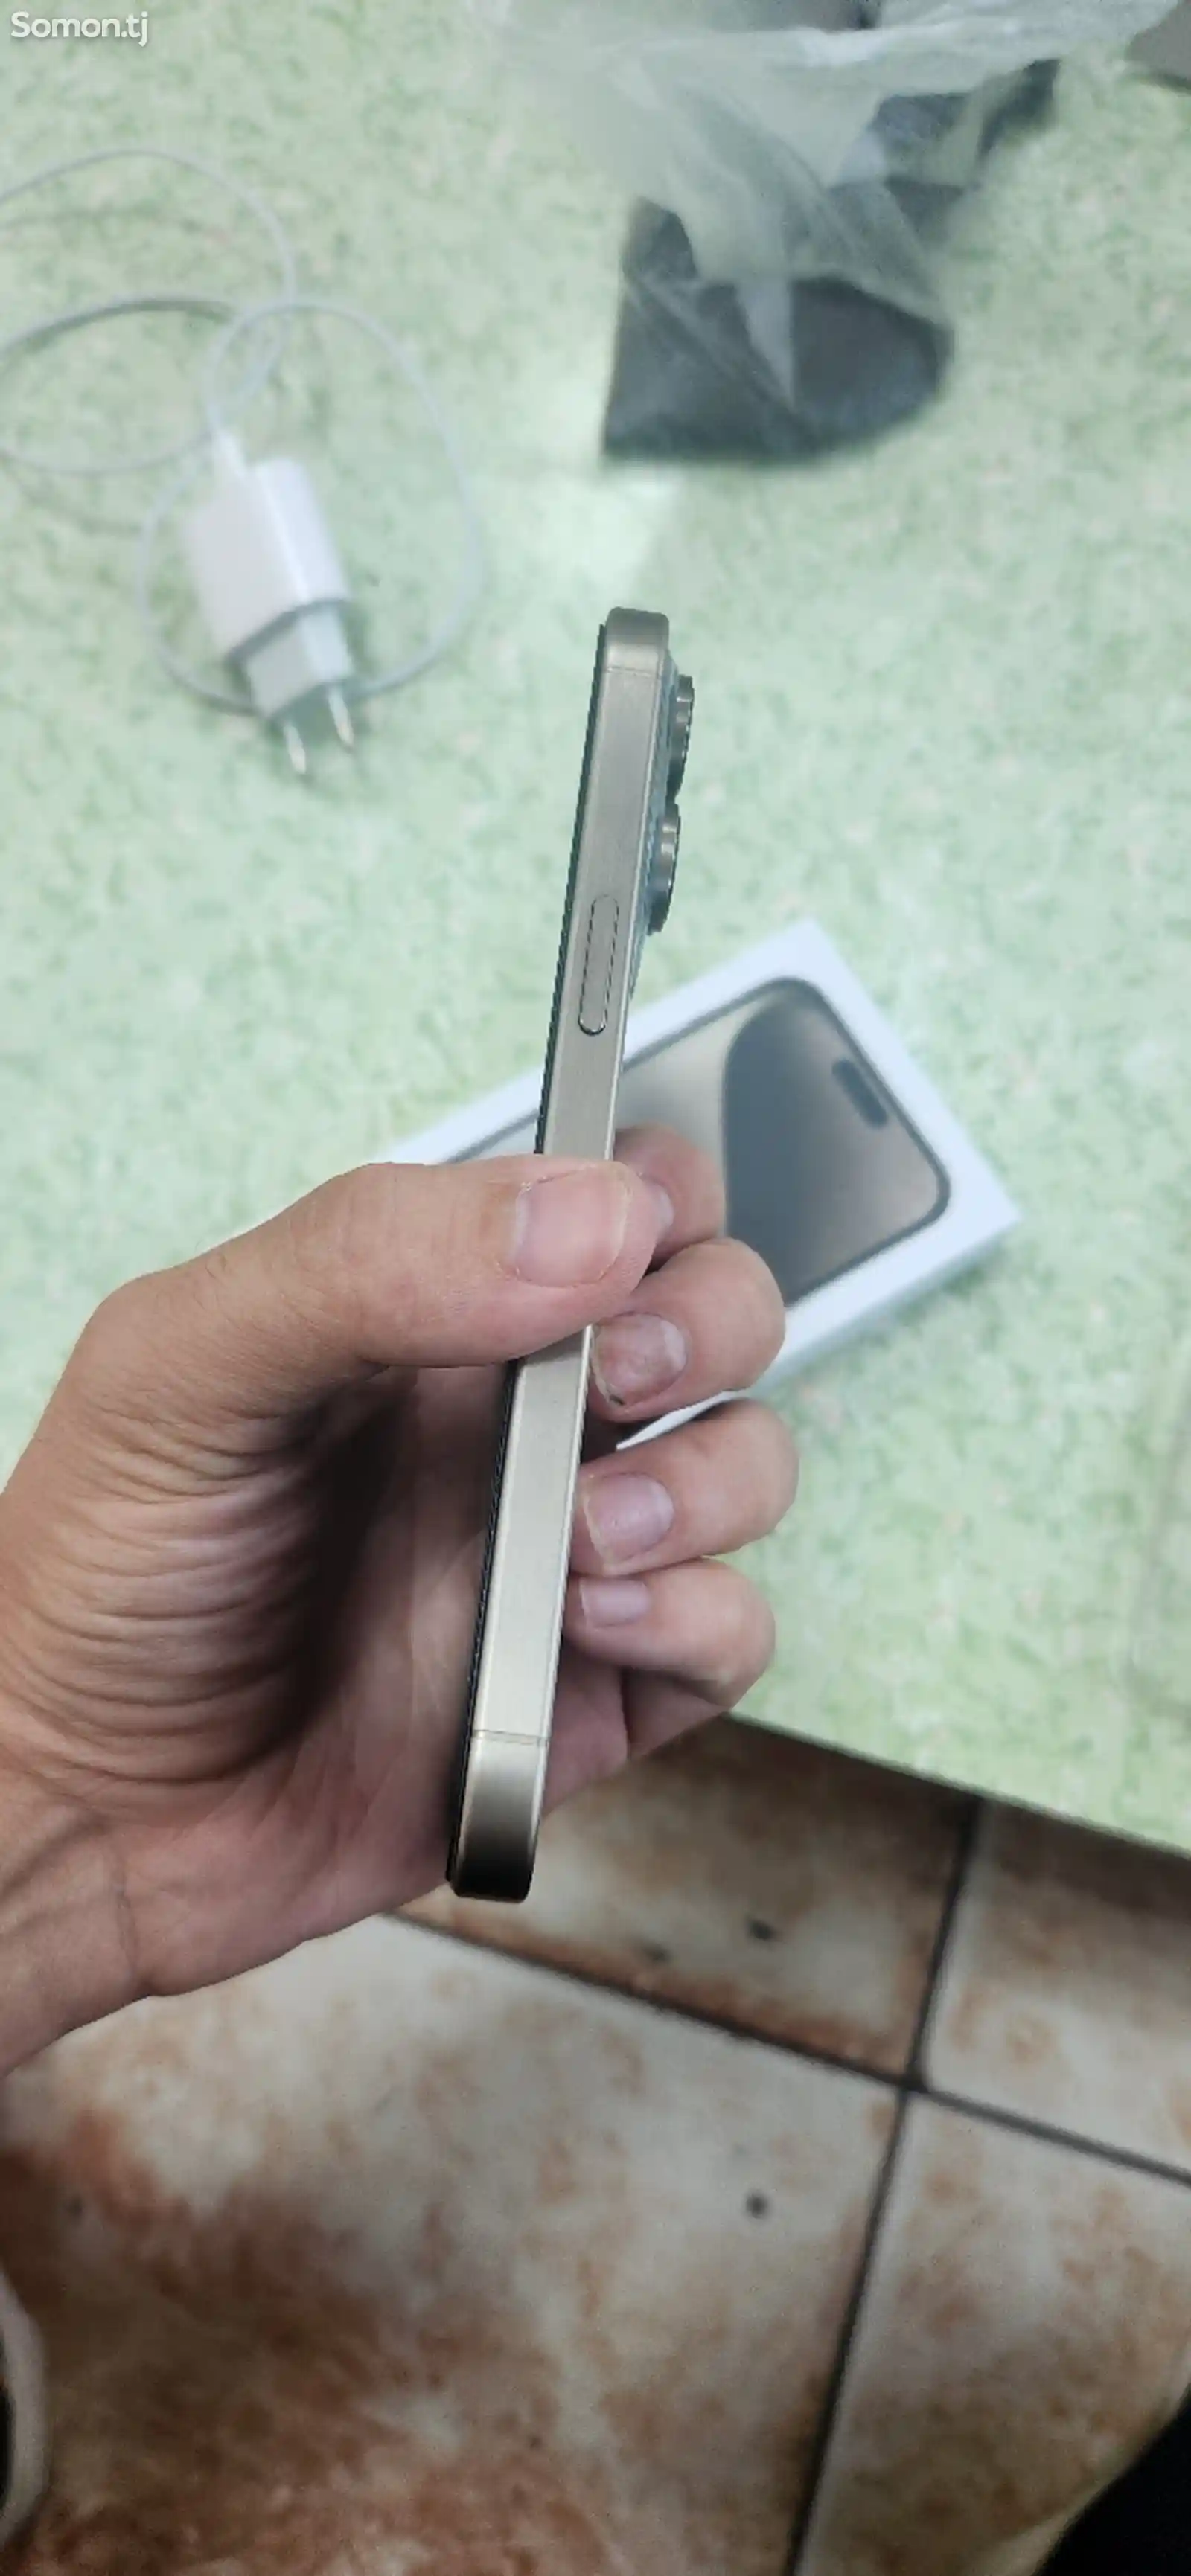 Apple iPhone 15 Pro Max, 256 gb, Natural Titanium-4